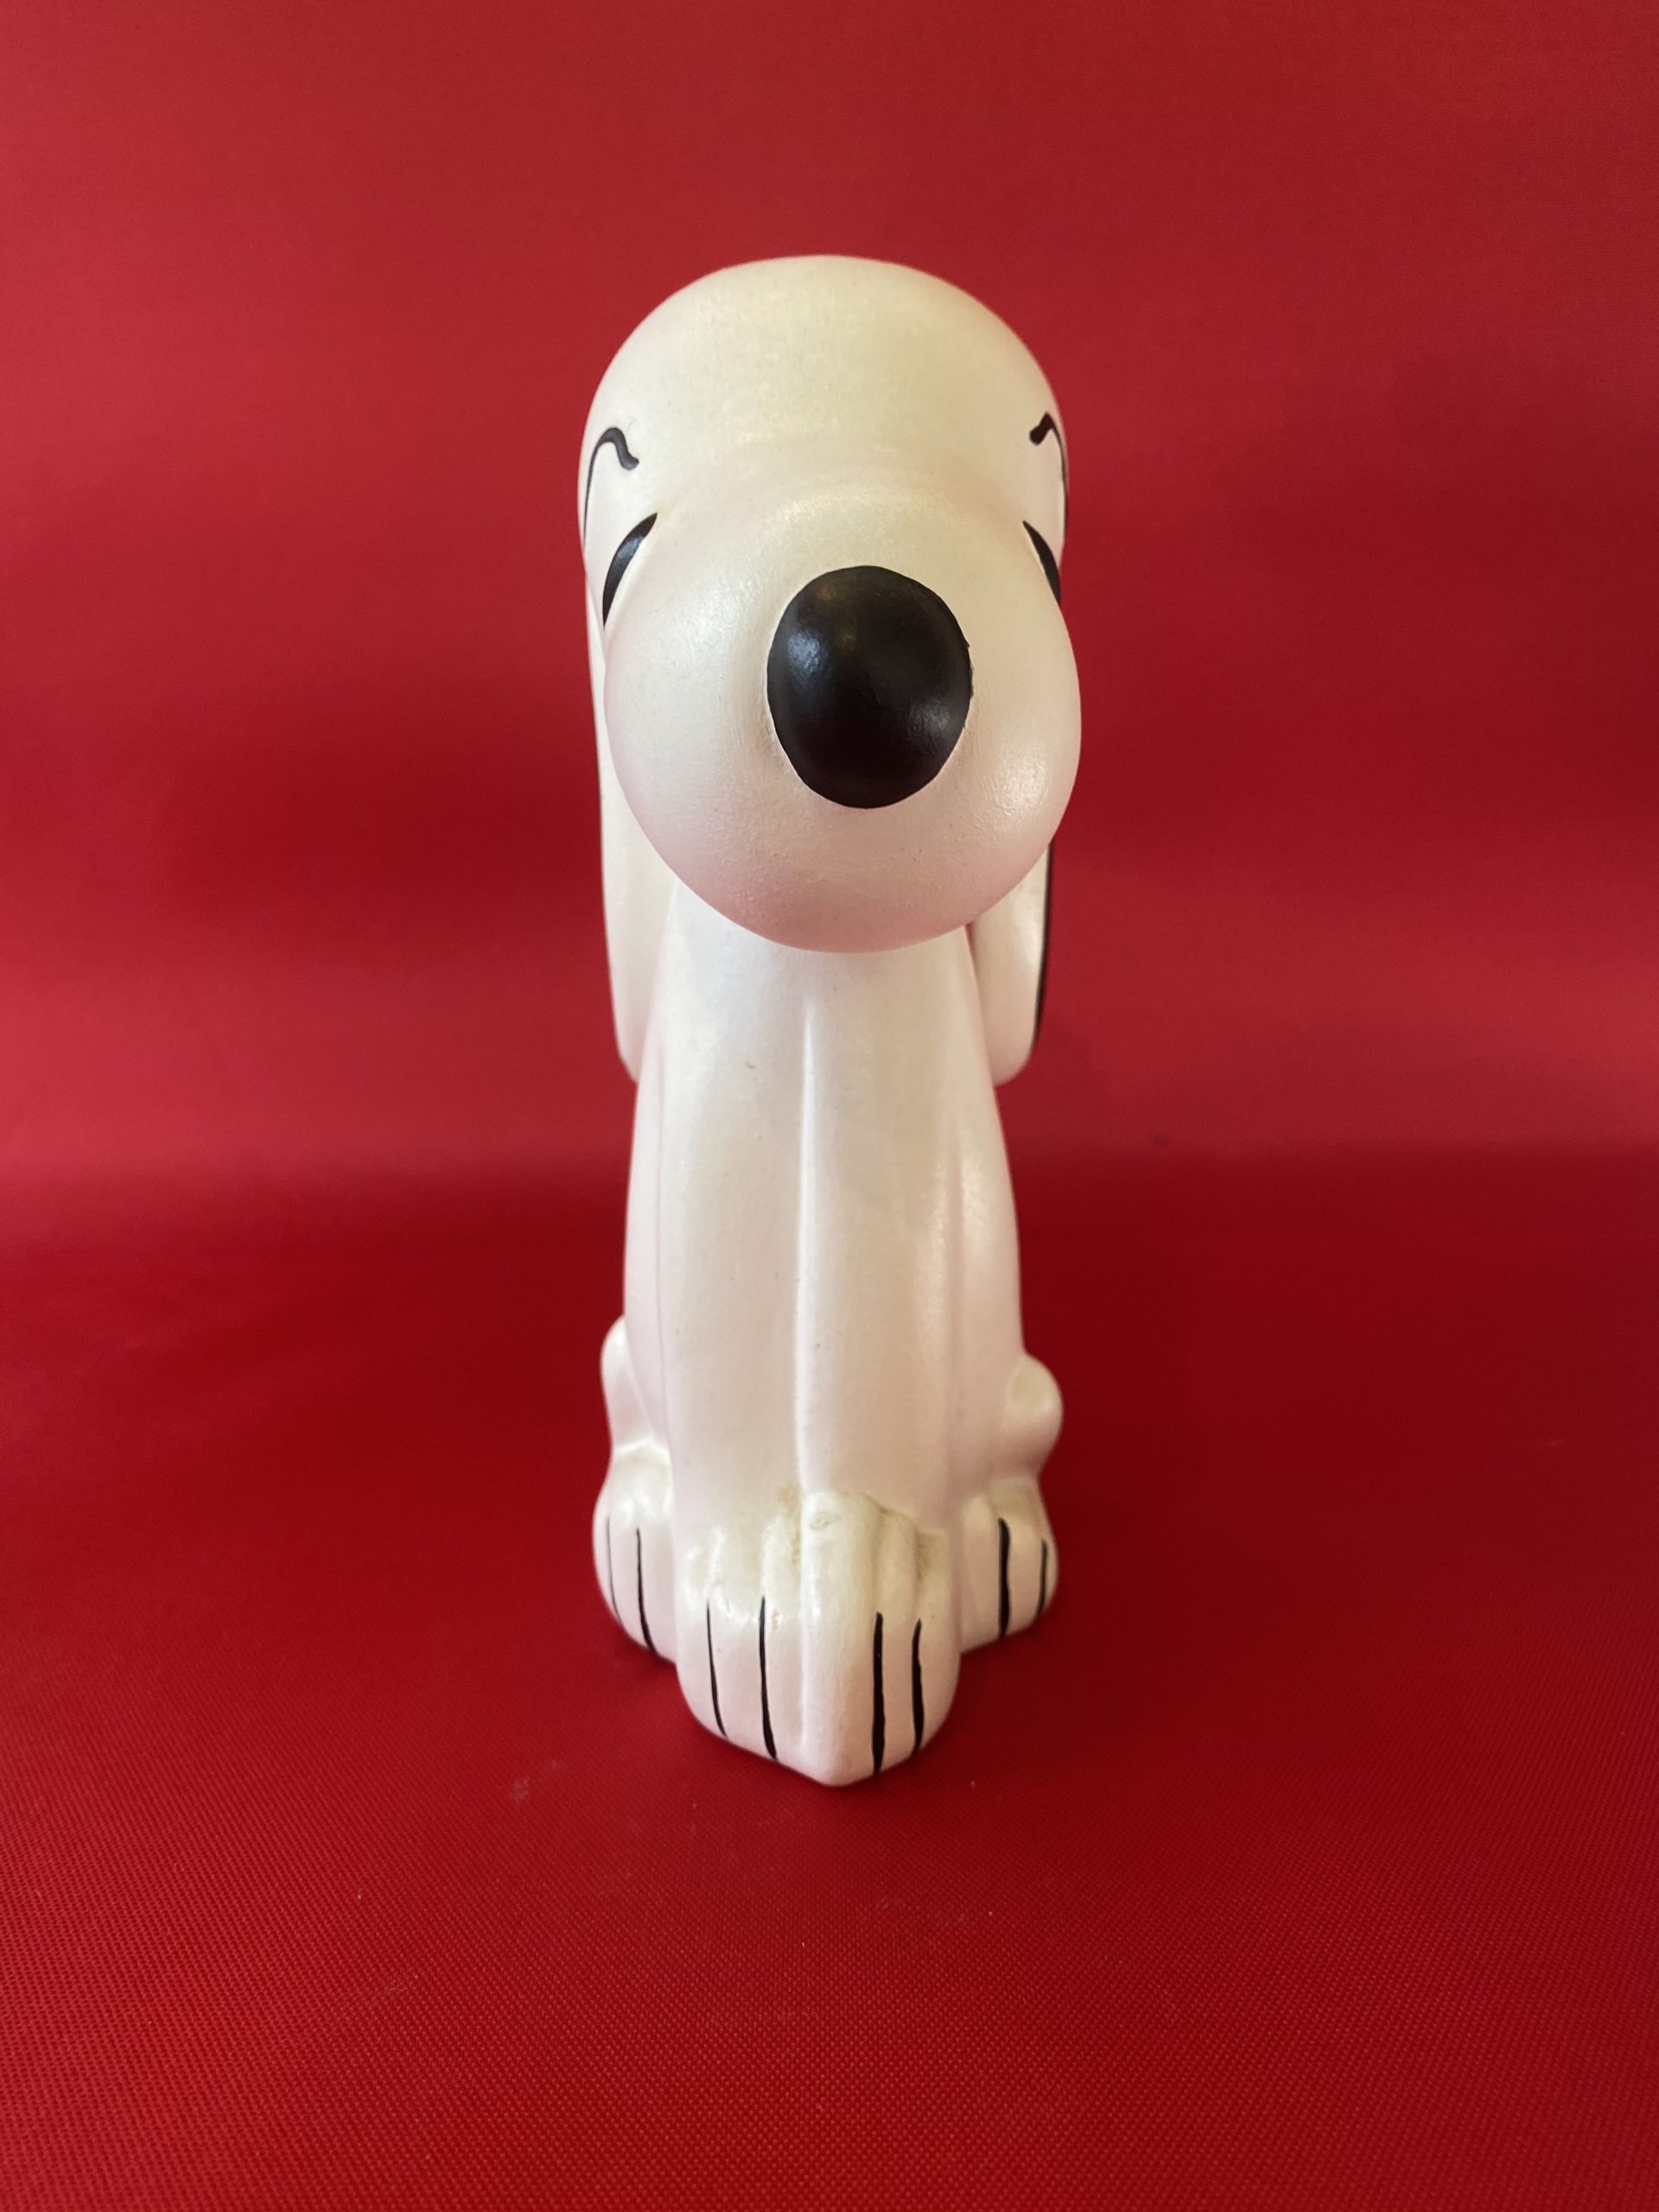 スヌーピー ビンテージ ハンドメイド フィギュア 1965年 60 S ピーナッツ 陶器 Snoopy Peanut Ceramic Figure Handmade American Wave